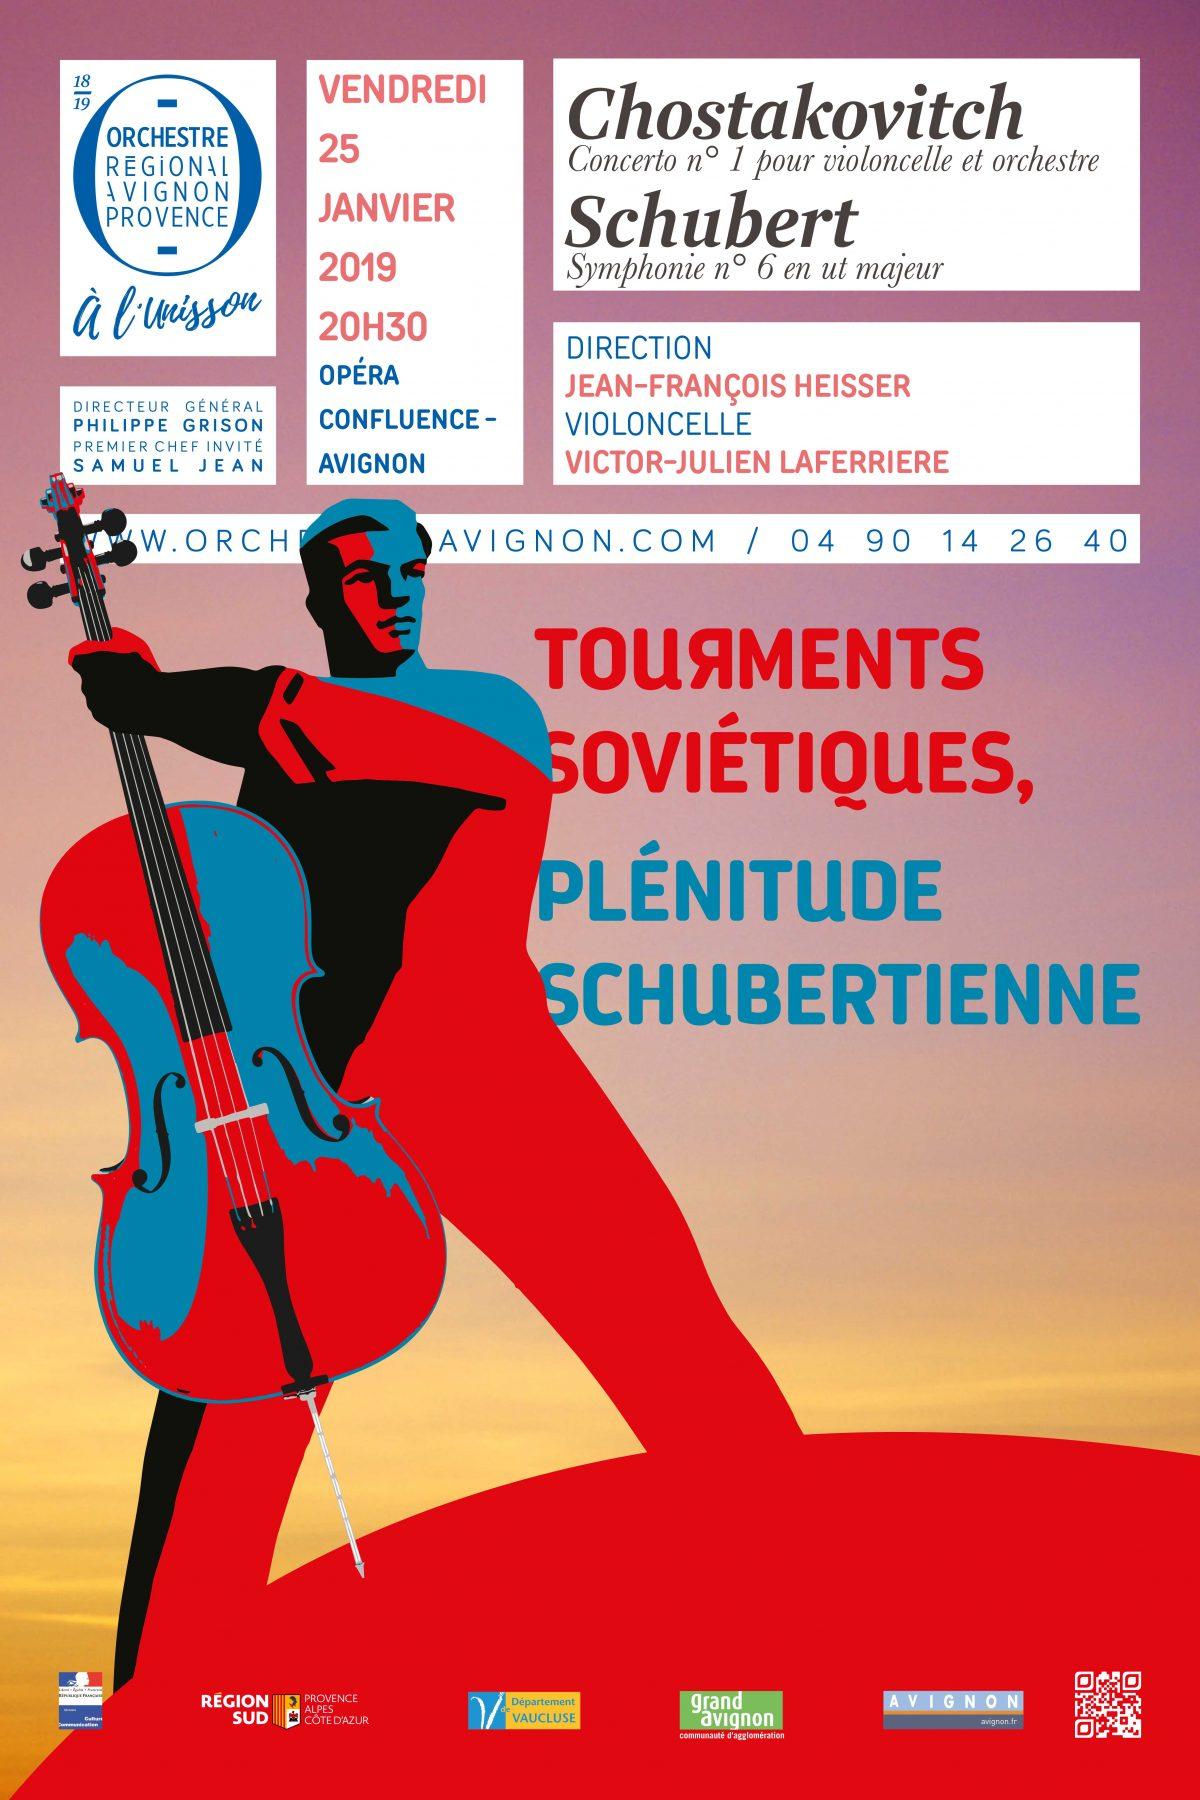 Tourments soviétiques - Jean-François Heisser direction Victor-Julien Laferrière violoncelle